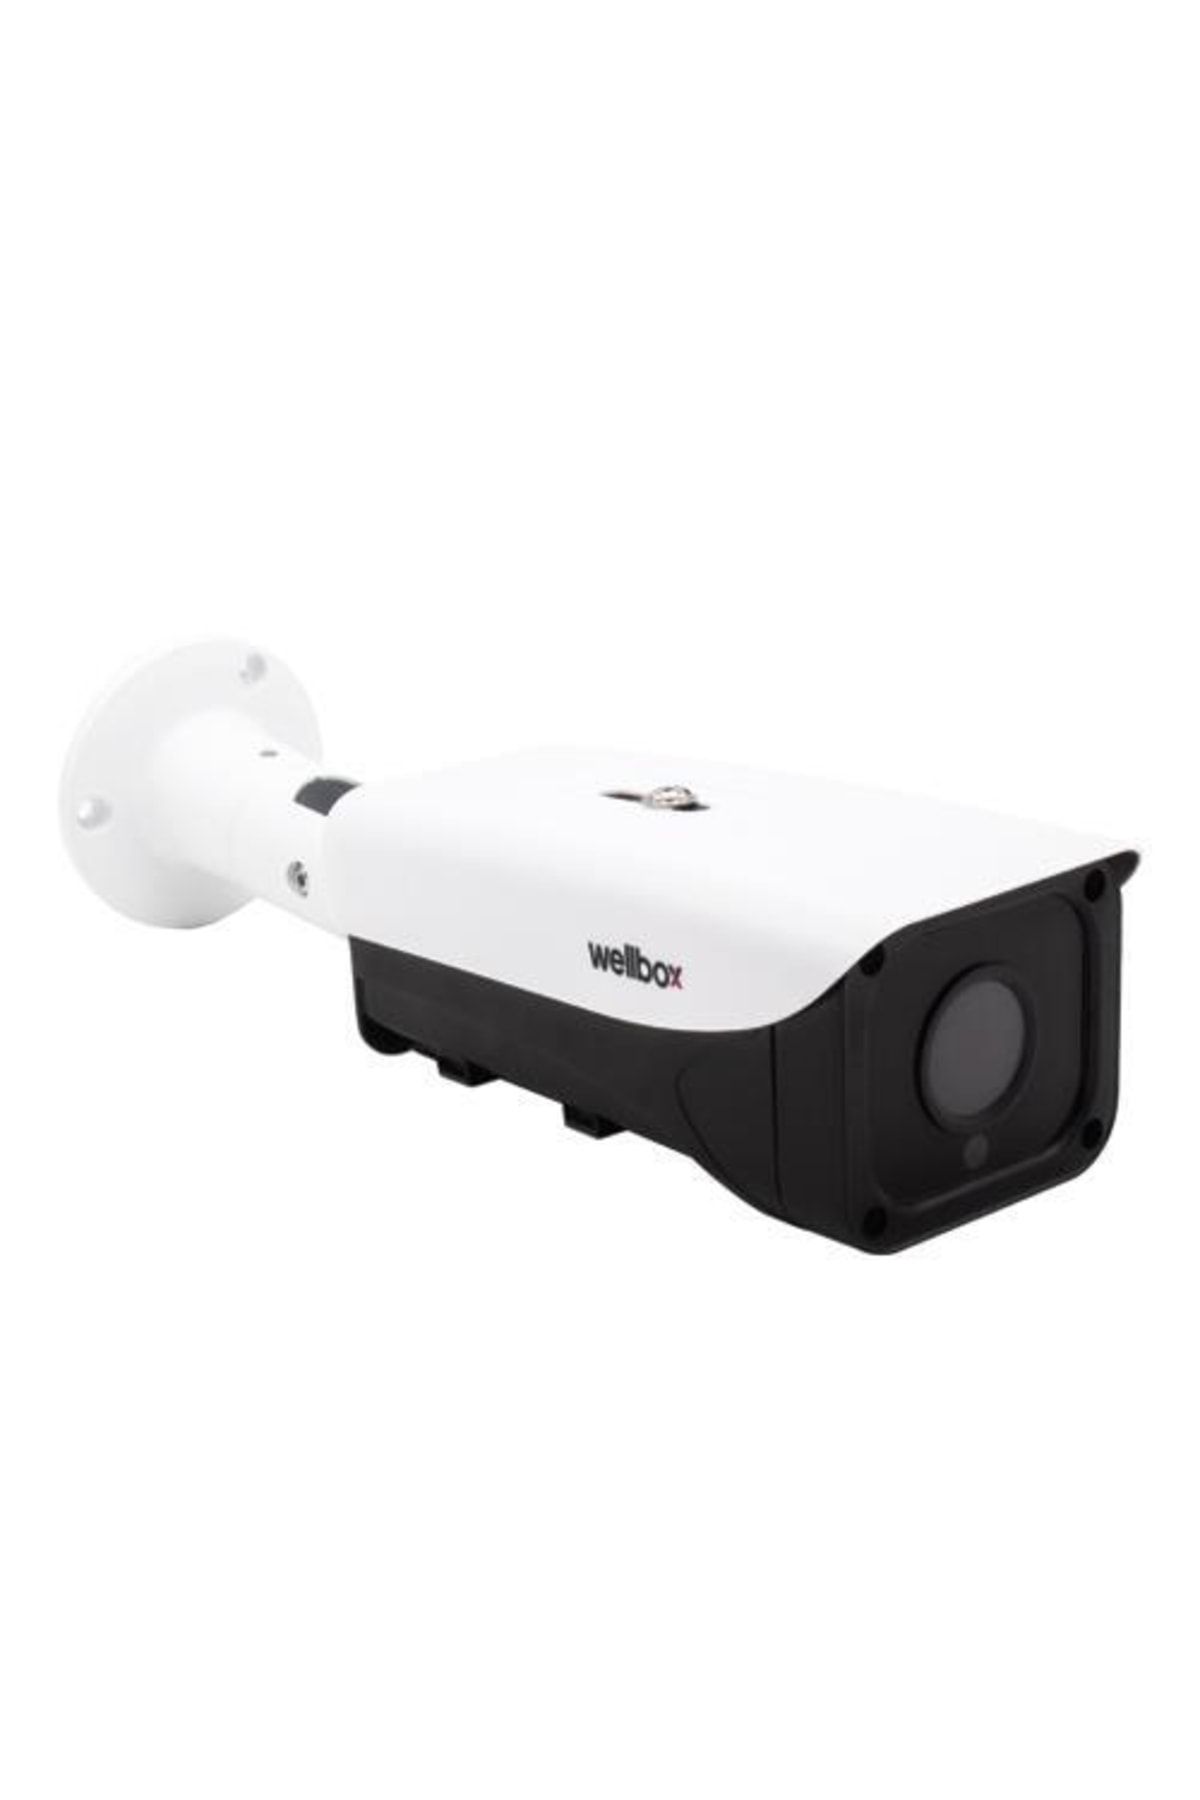 wellbox 2mp Ahd Bullet Kamera Wb-b3200str